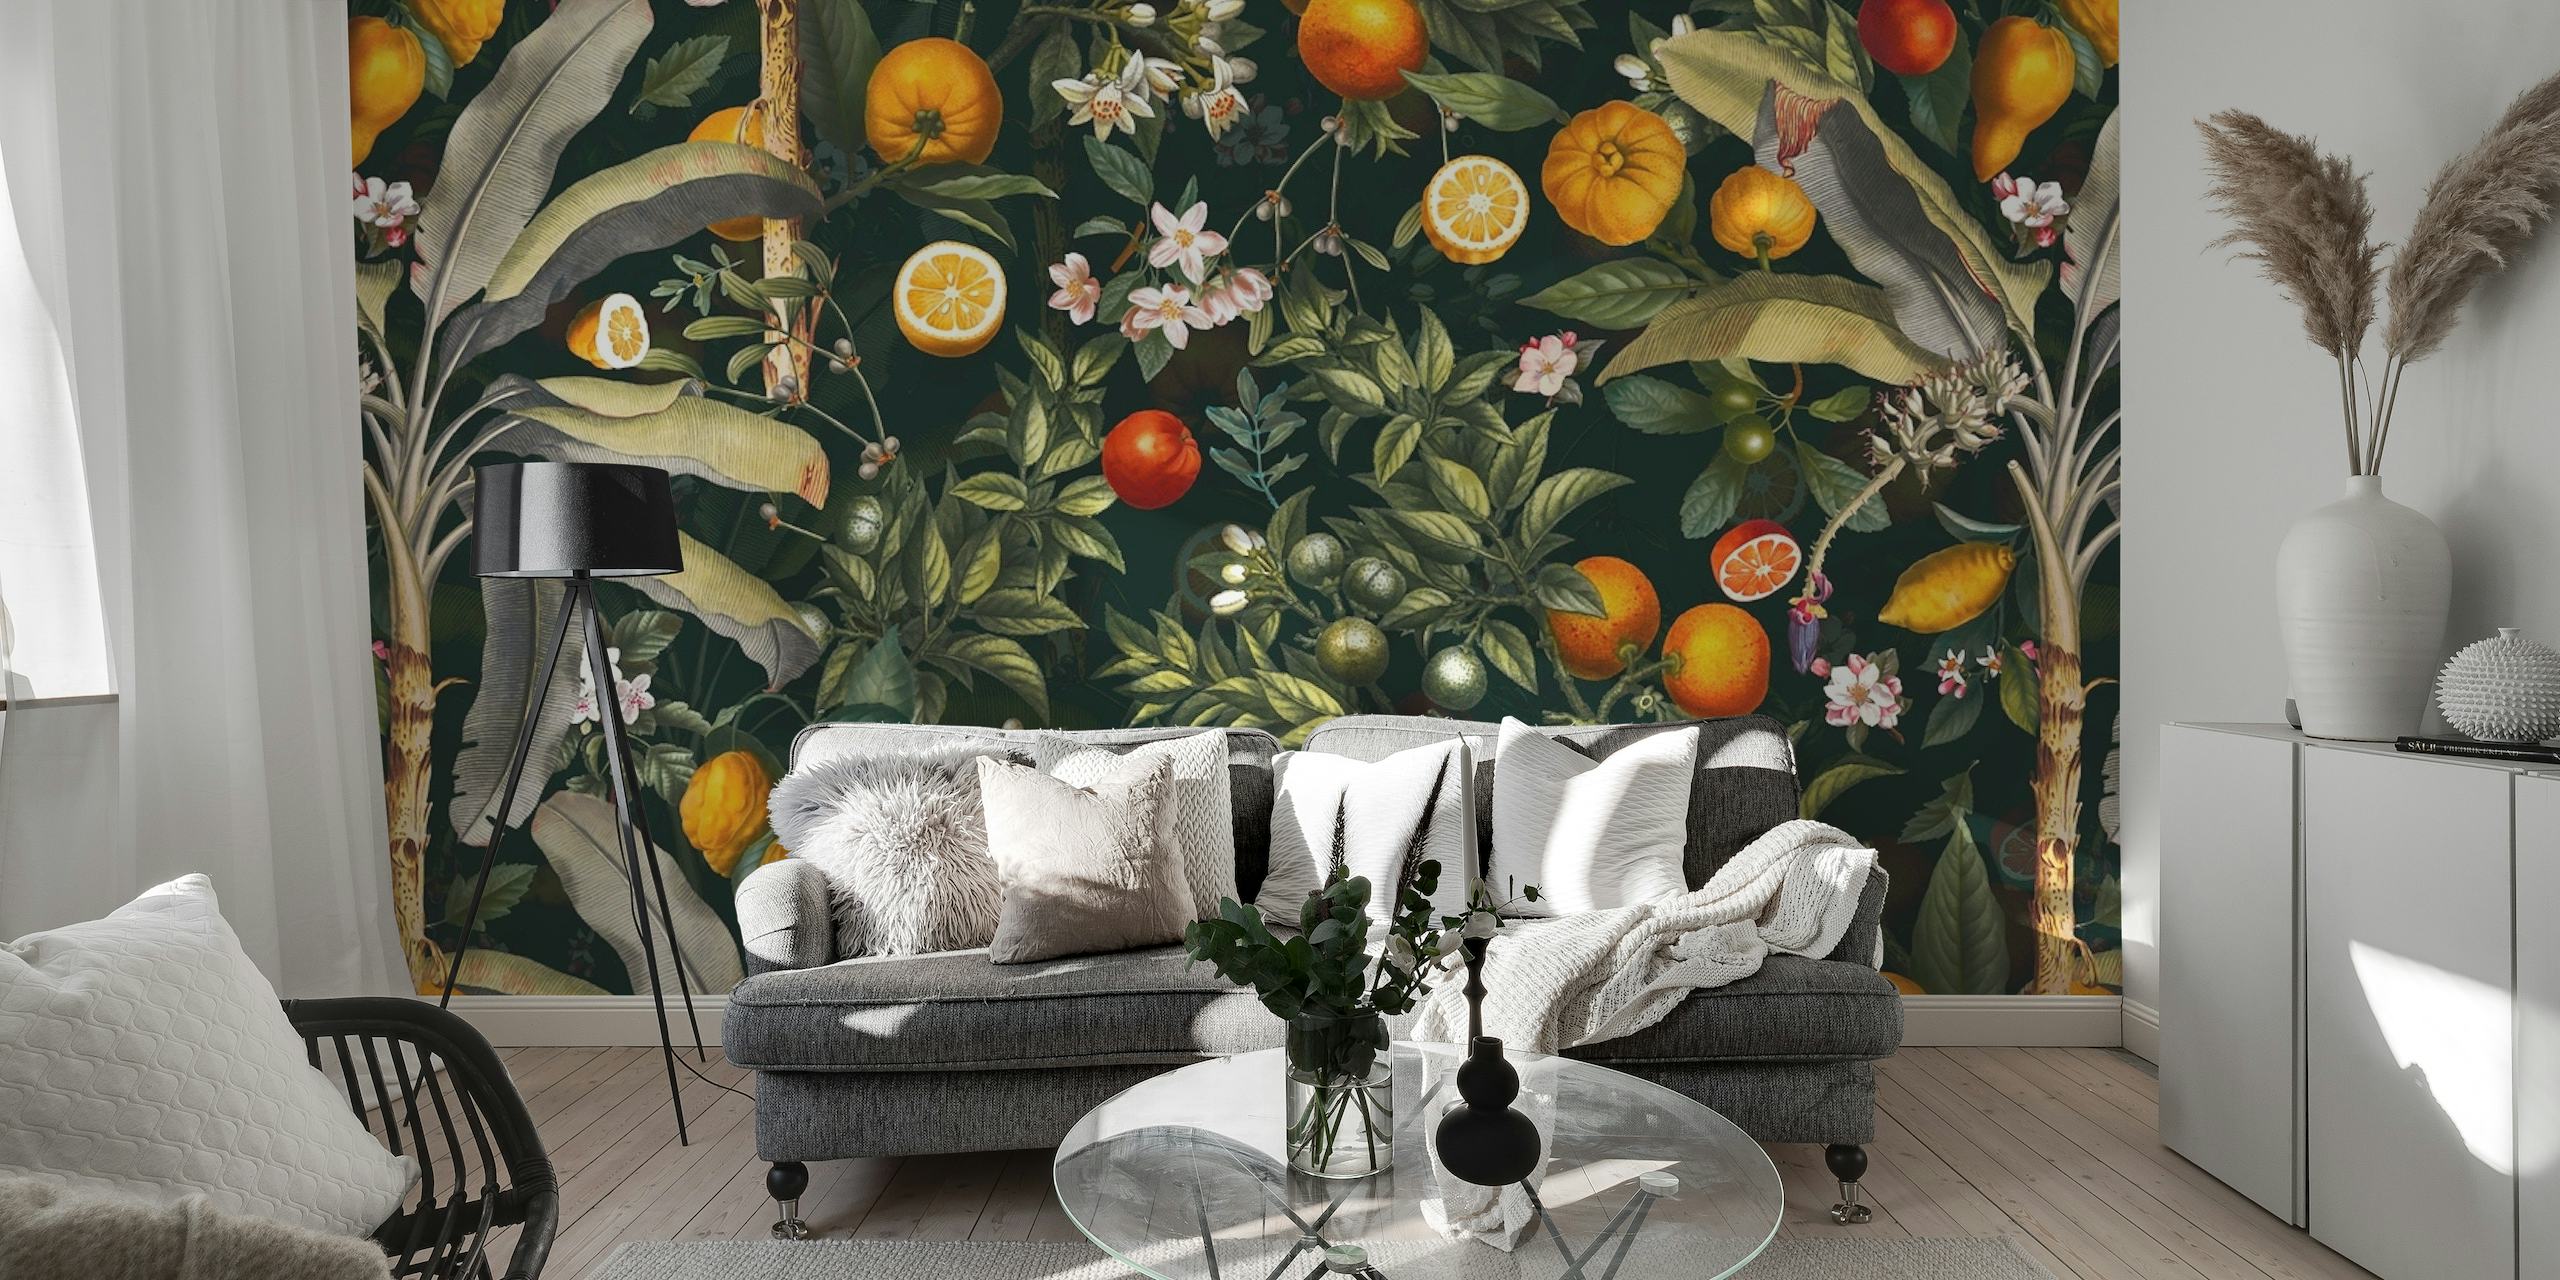 Mural de parede estilo vintage com frutas e folhagens ilustradas.